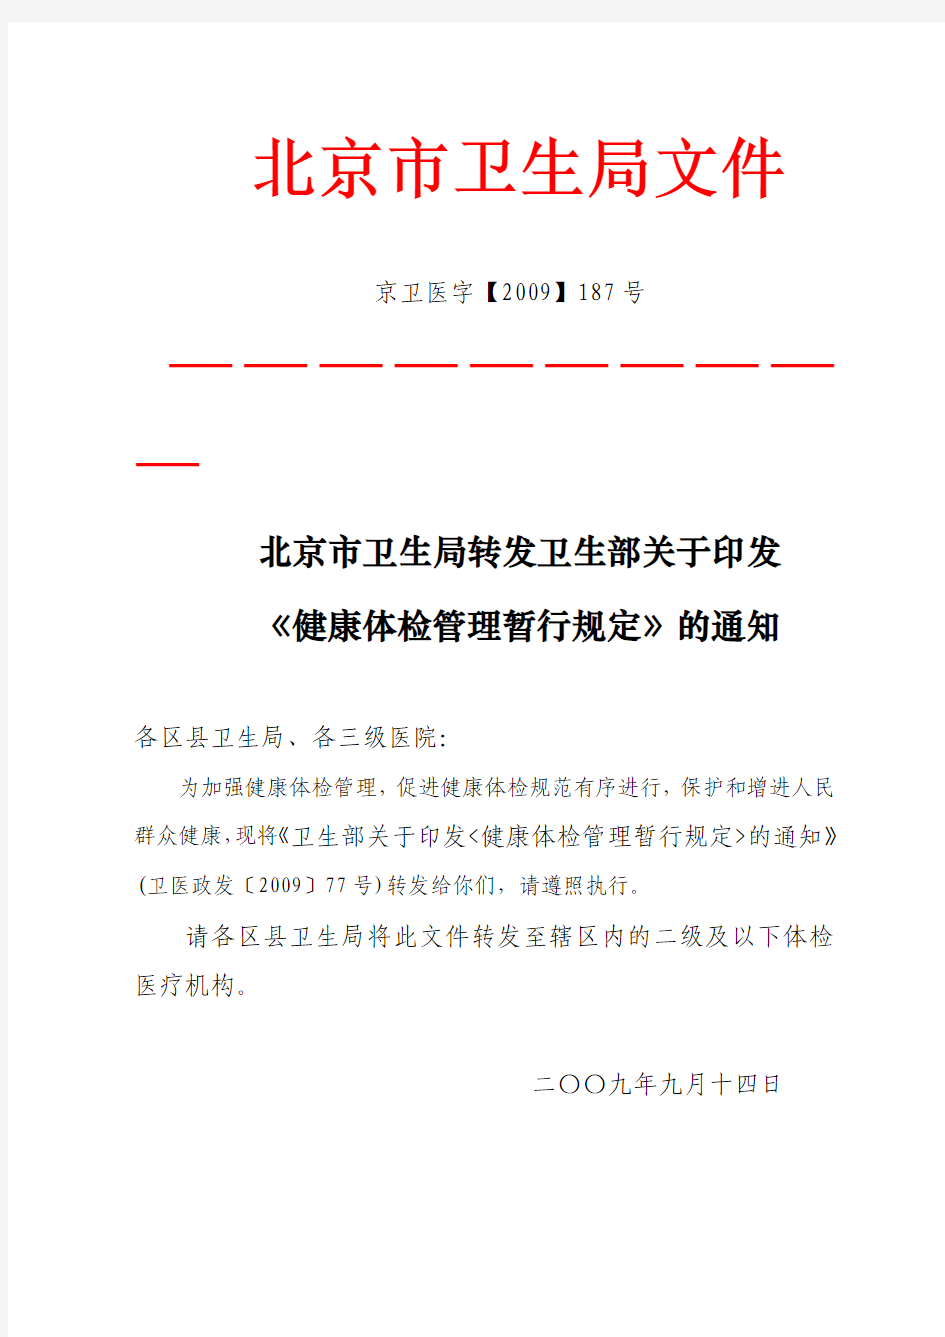 北京市卫生局转发卫生部关于印发《健康体检管理暂行规定》的通知